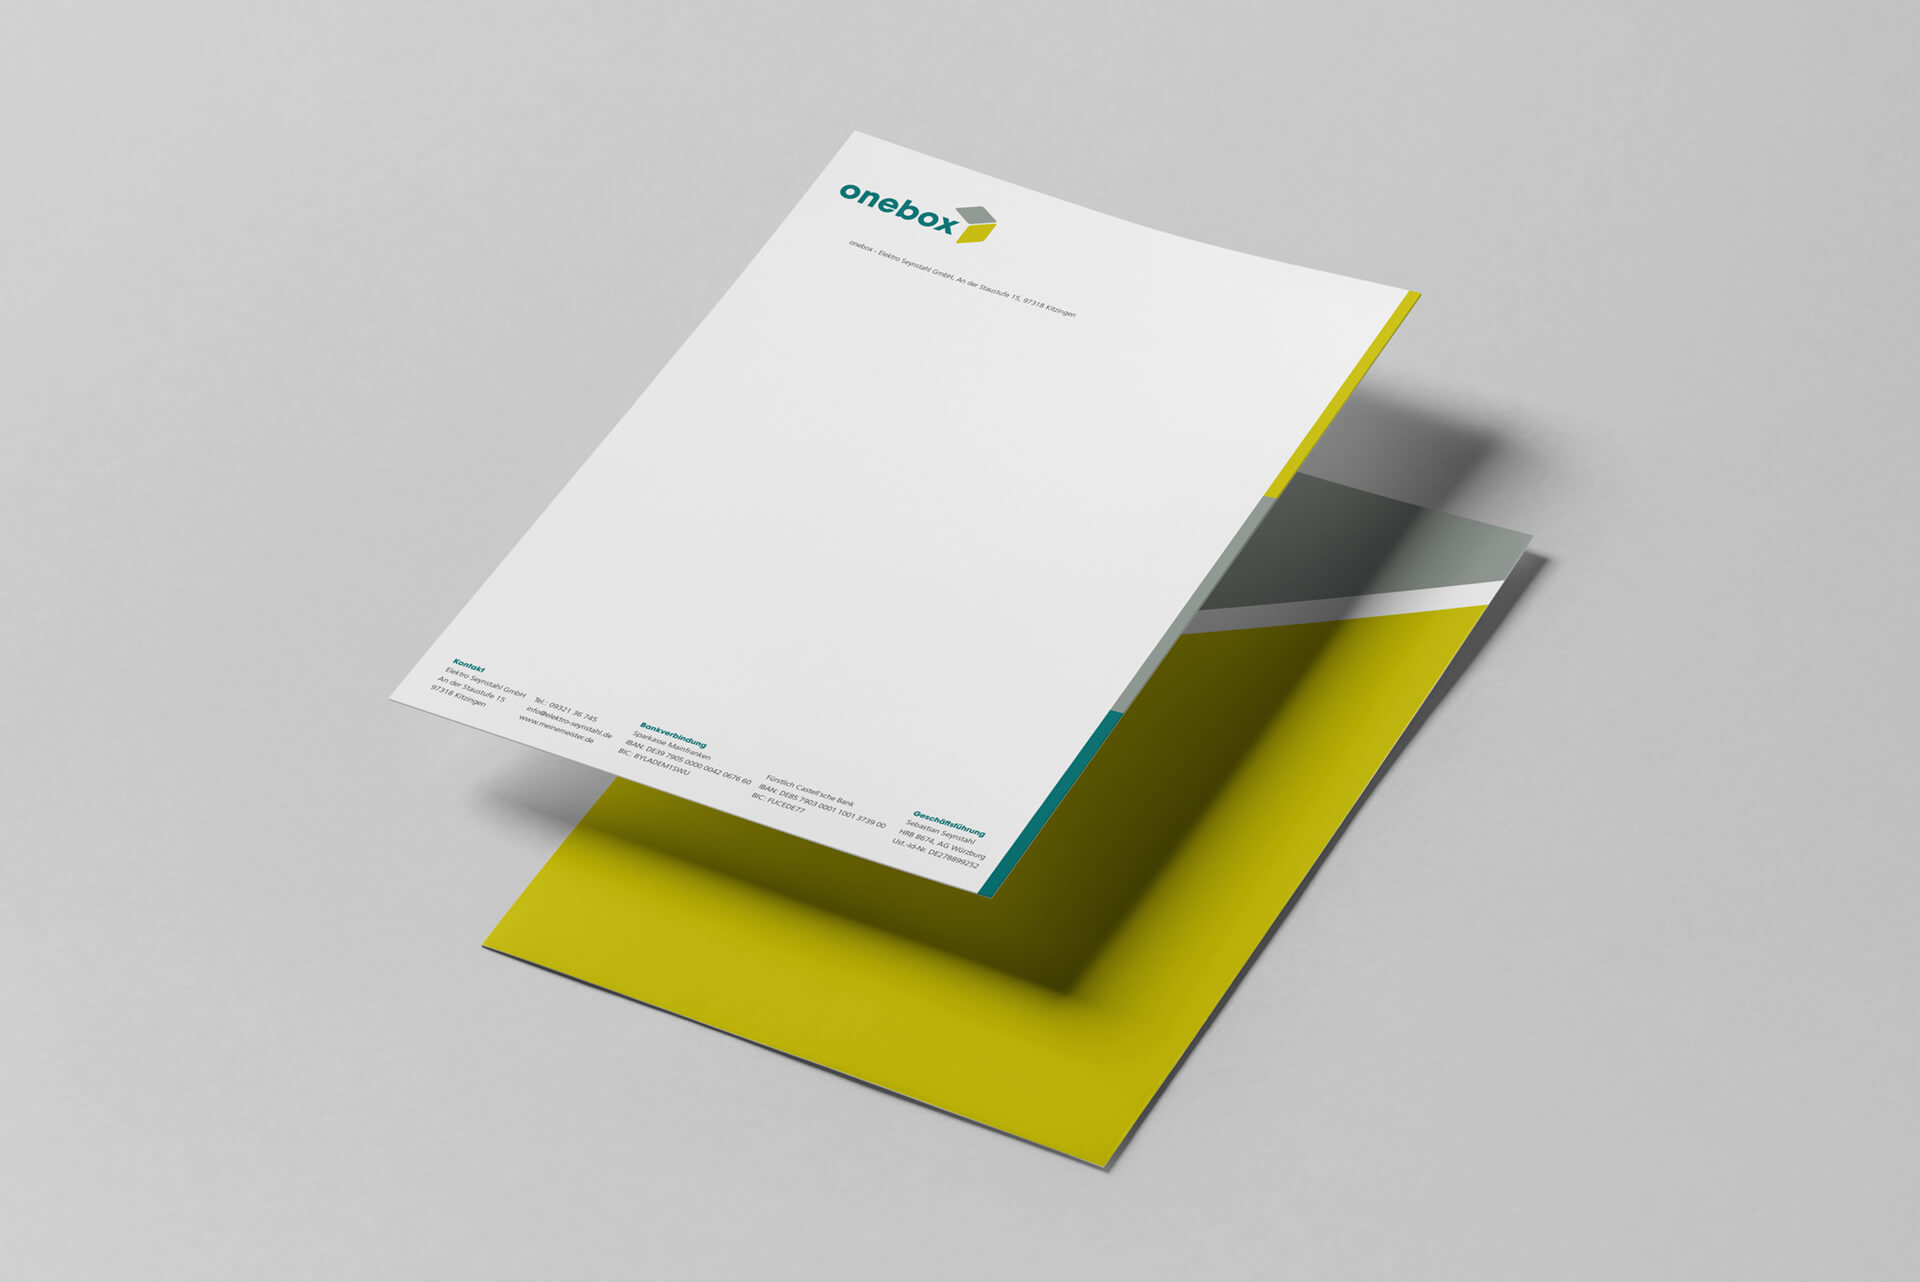 Gestaltung des Brief- und Rechnungspapier als essentieller Teil der Markenidentität sowie des Basis Corporate Designs